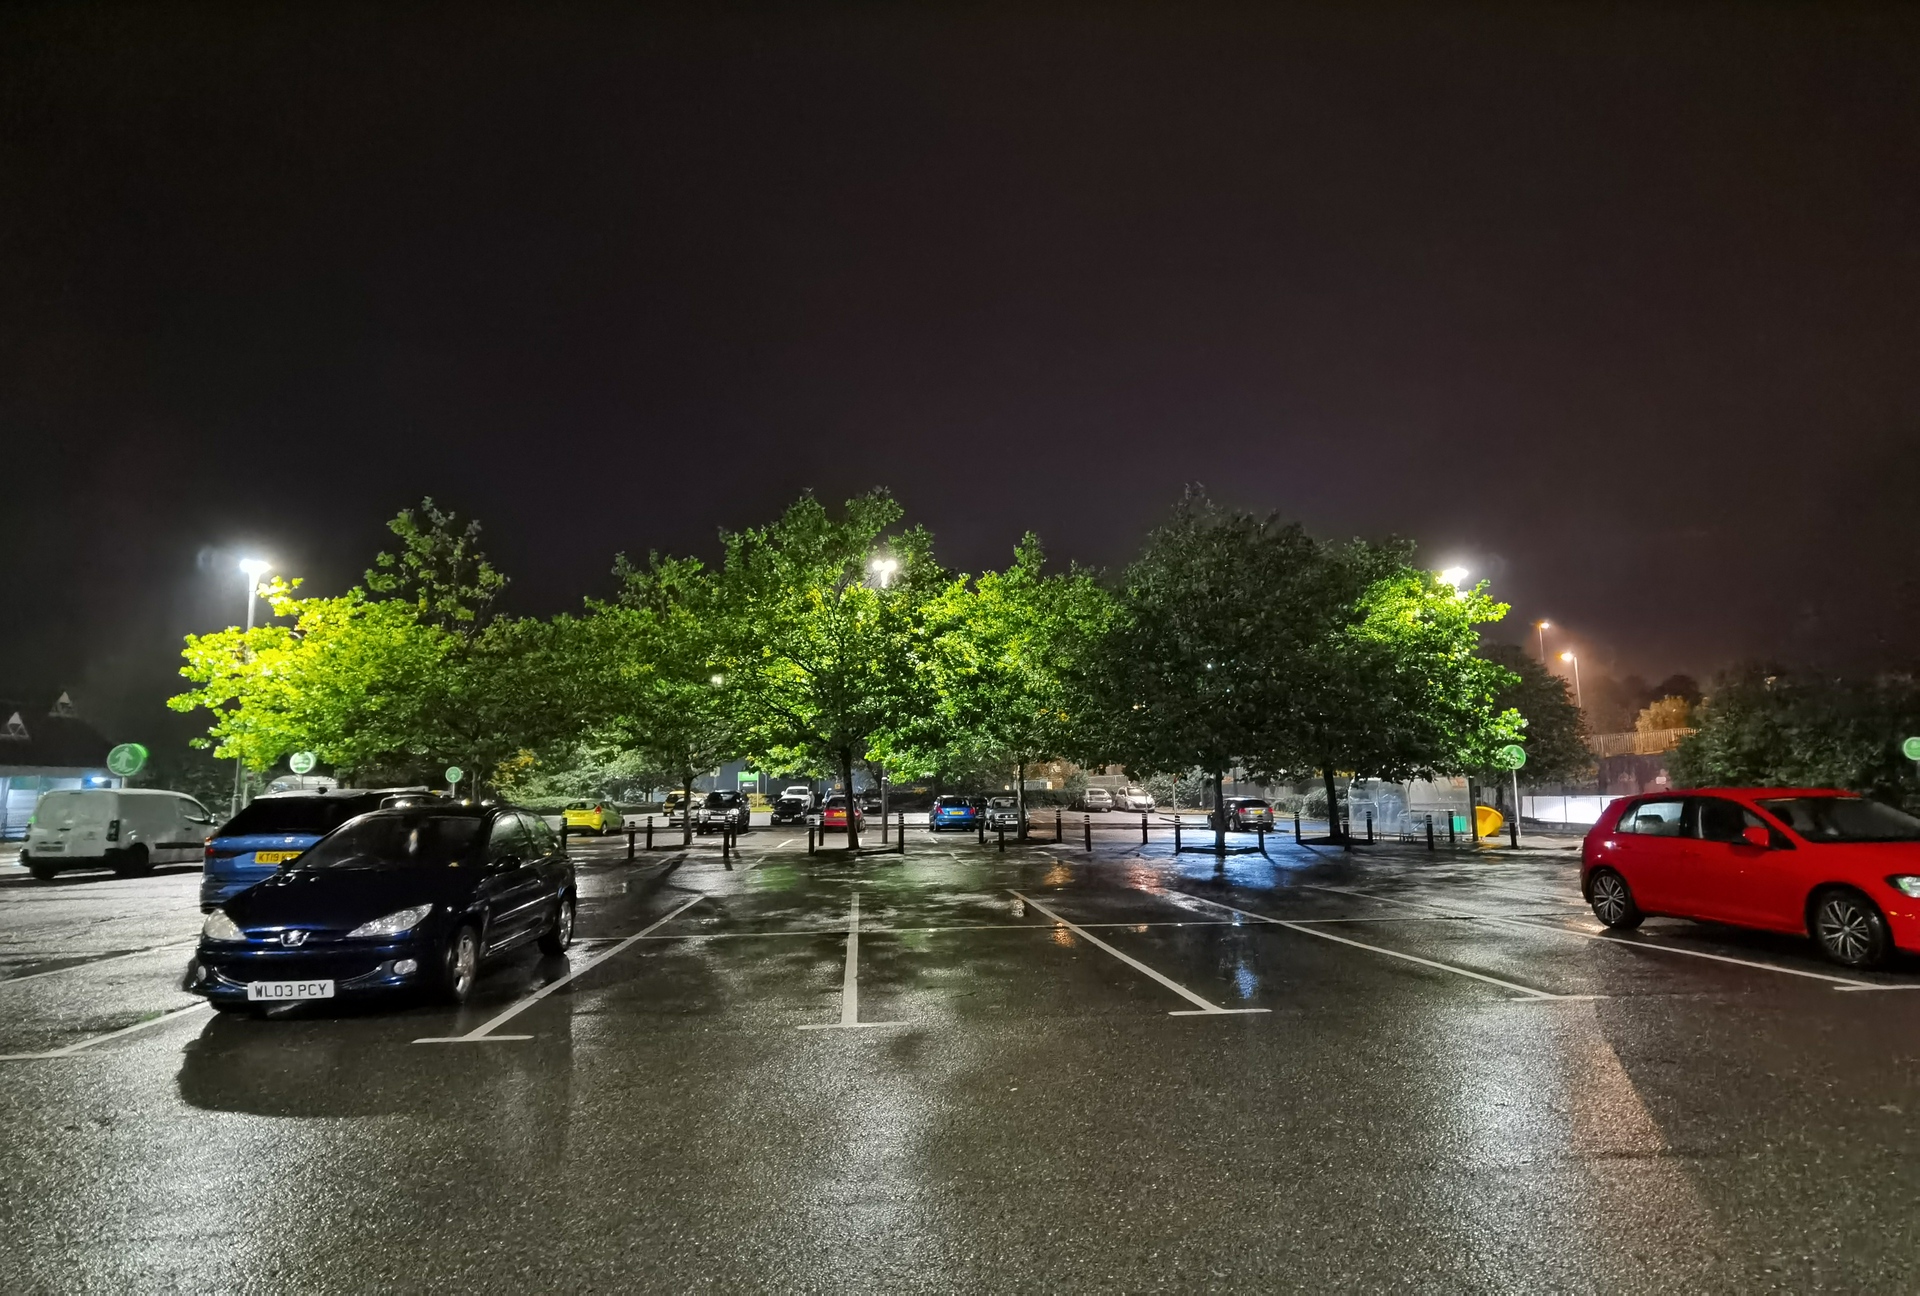 HUAWEI Mate 30 Pro Camera test Night shot of supermarket car park